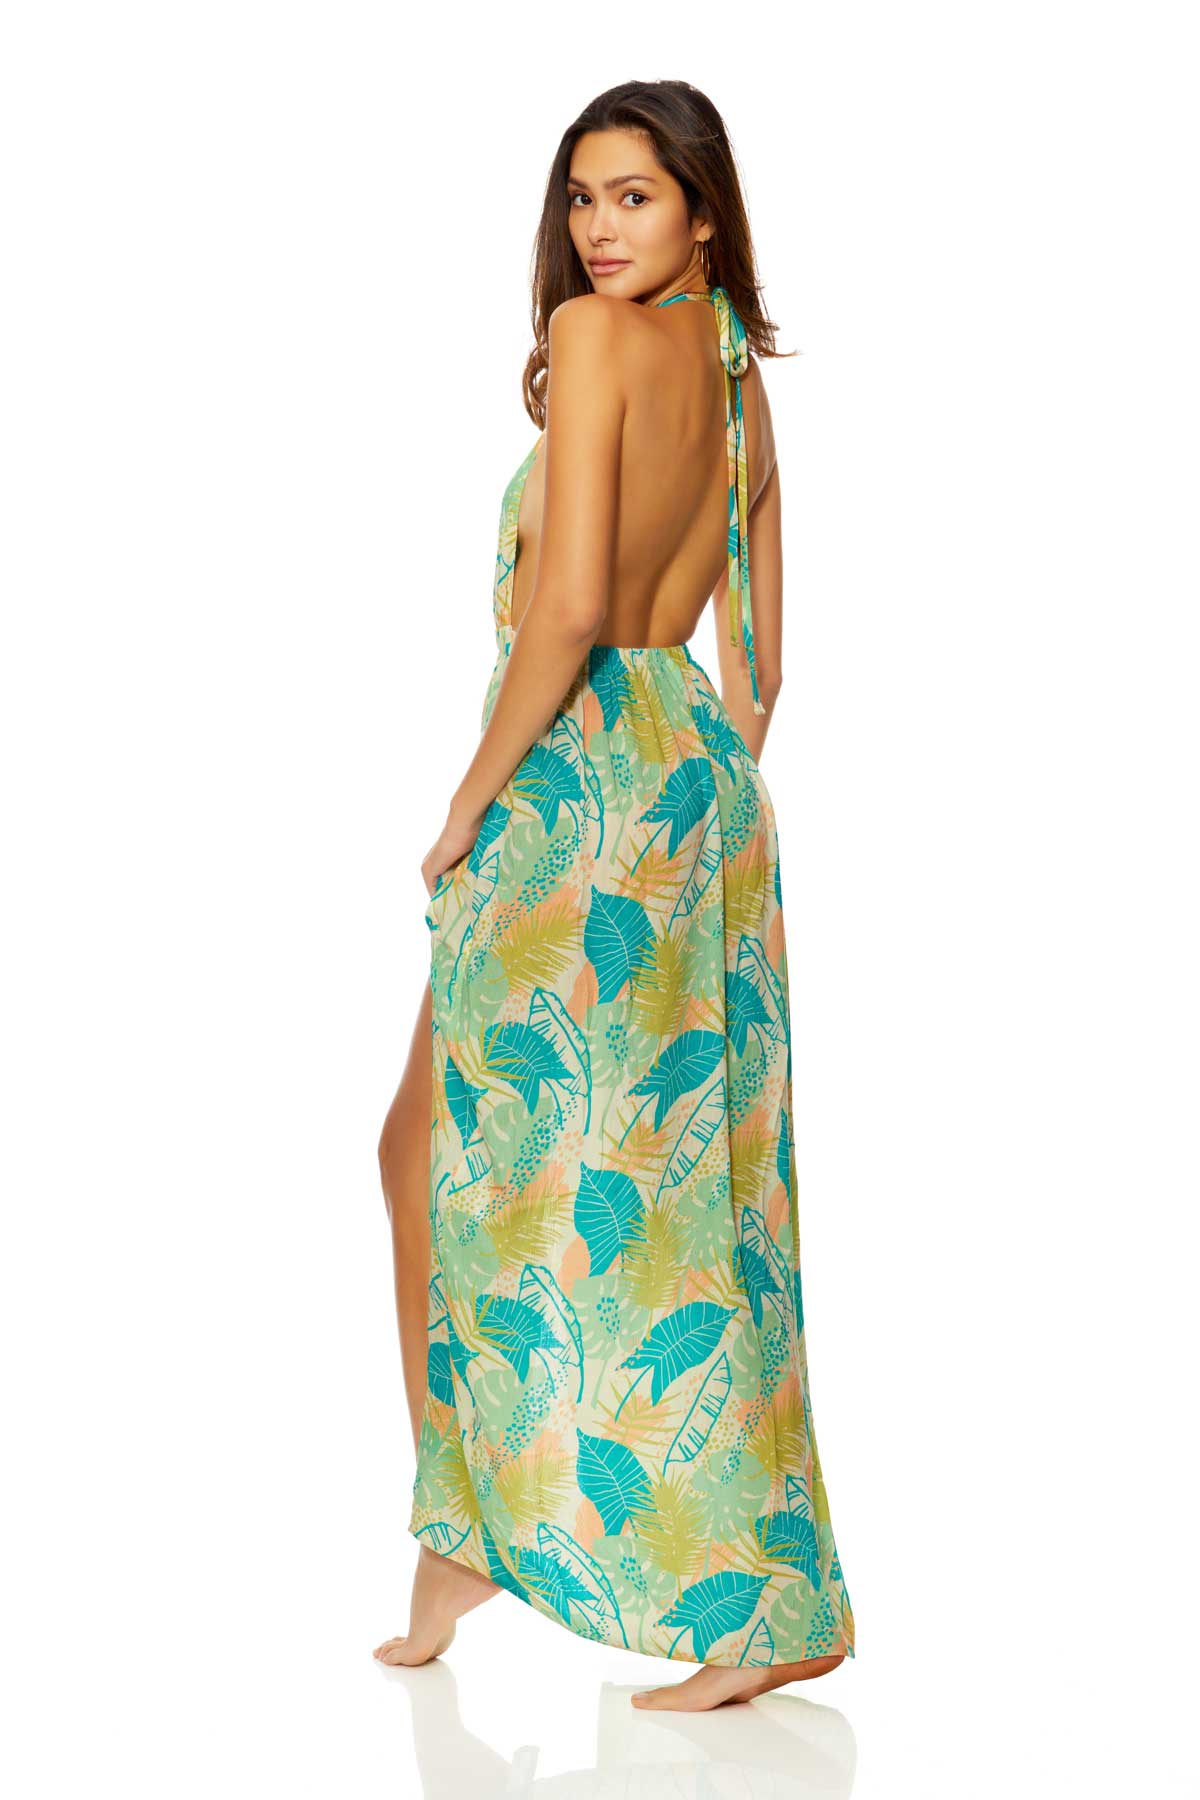 Ibiza: Tahiti Low V Halter Neck Dress Cover Up